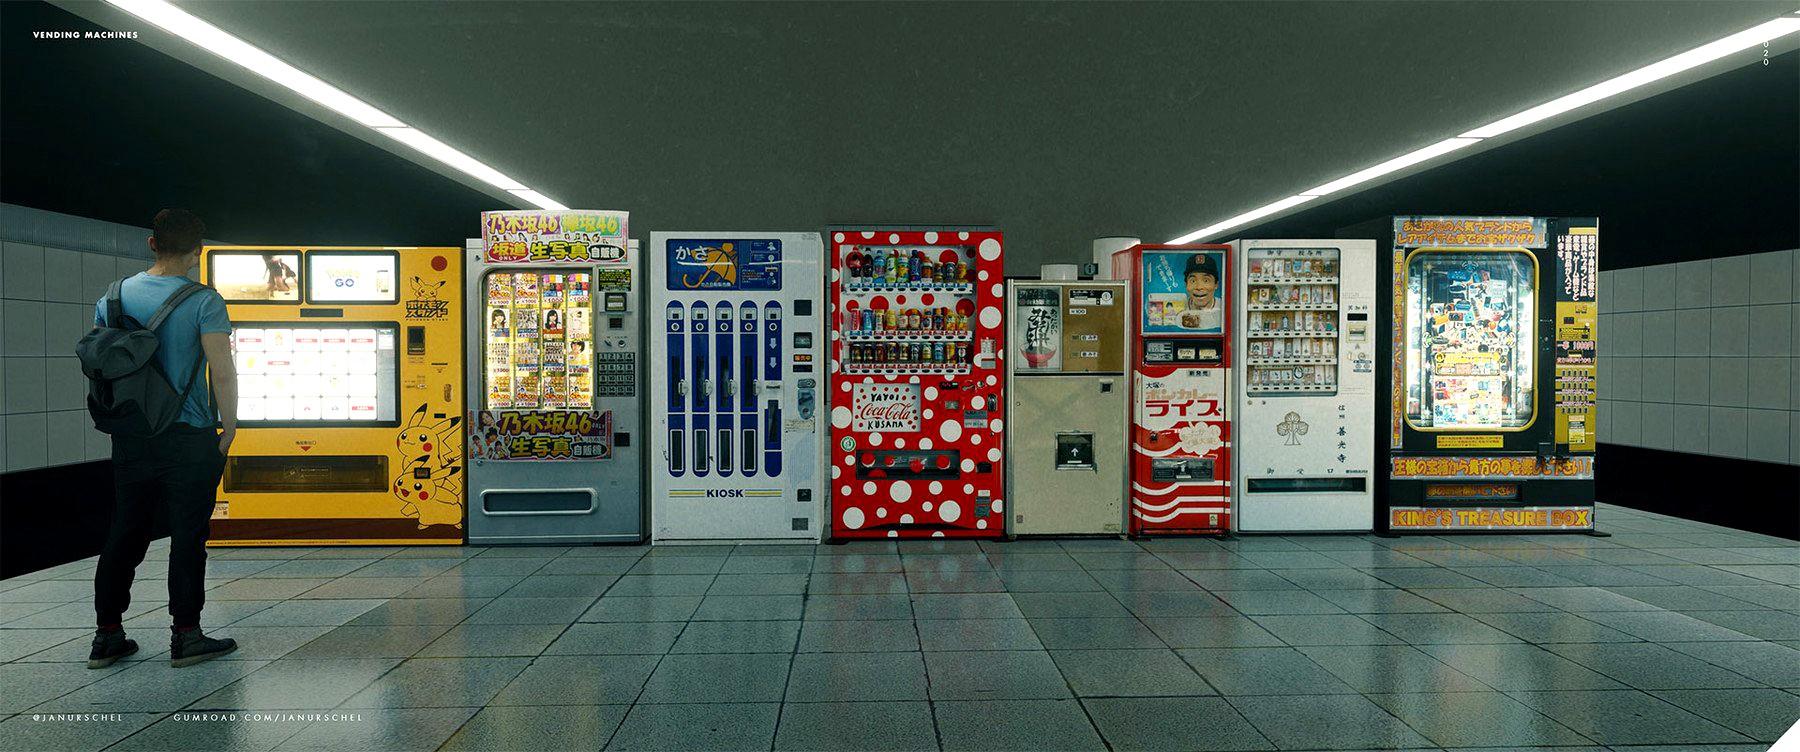 Funky Japanese vending machine assets for Blender